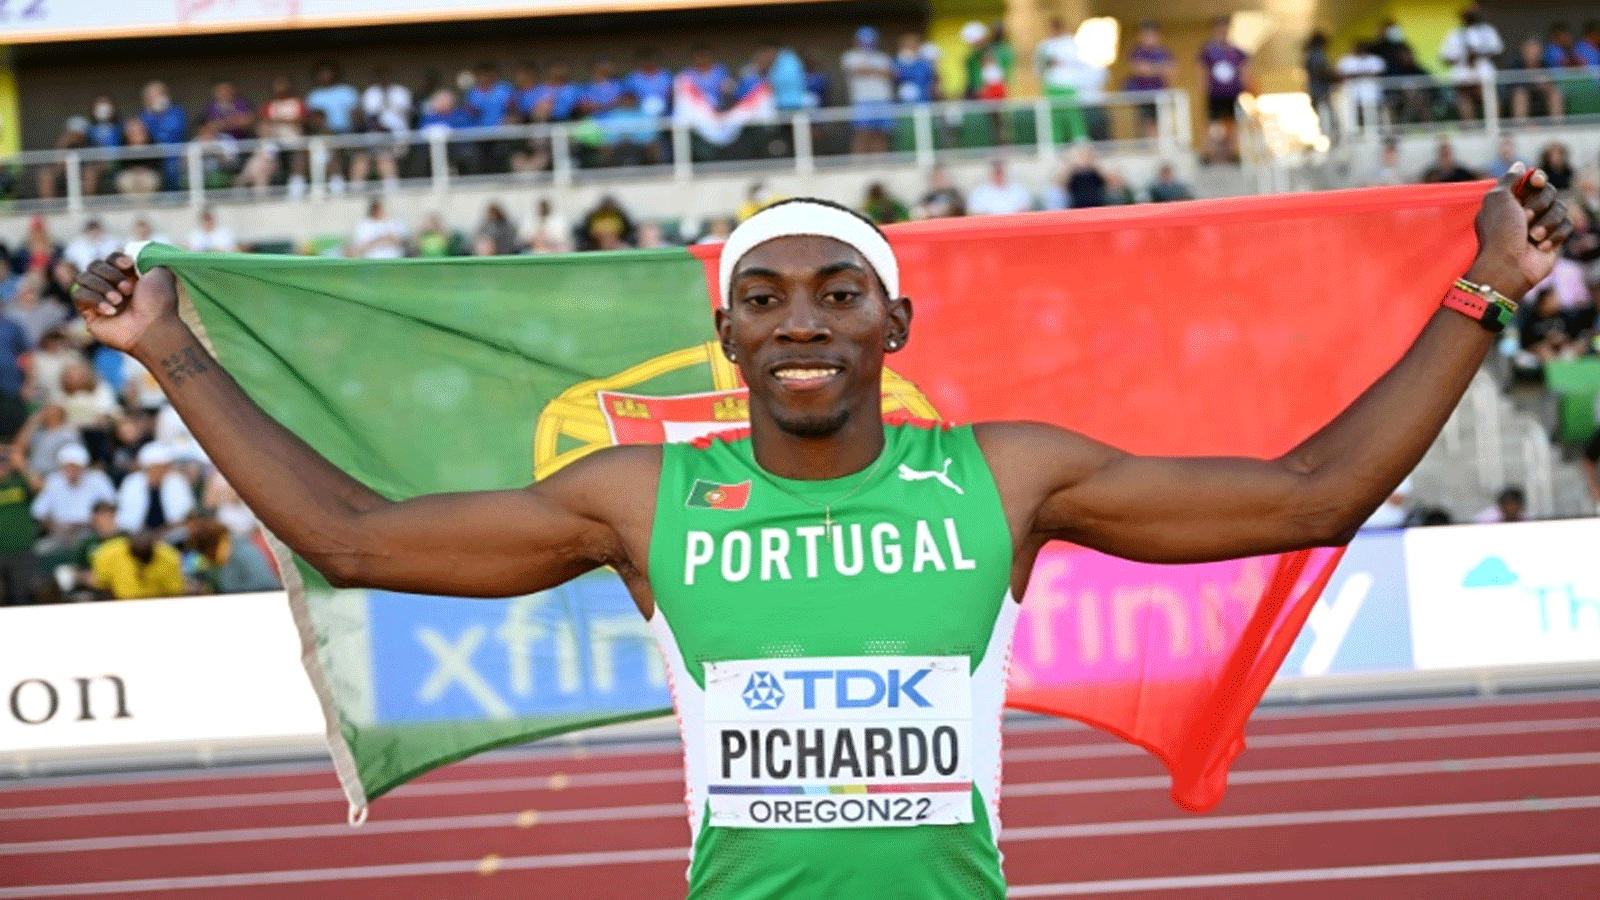 البرتغالي بيدرو بيتشاردو يحتفل بتتويجه بلقب بطل العالم في الوثبة الثلاثية في مونديال يوجين لألعاب القوى في 23 تموز/يوليو 2022